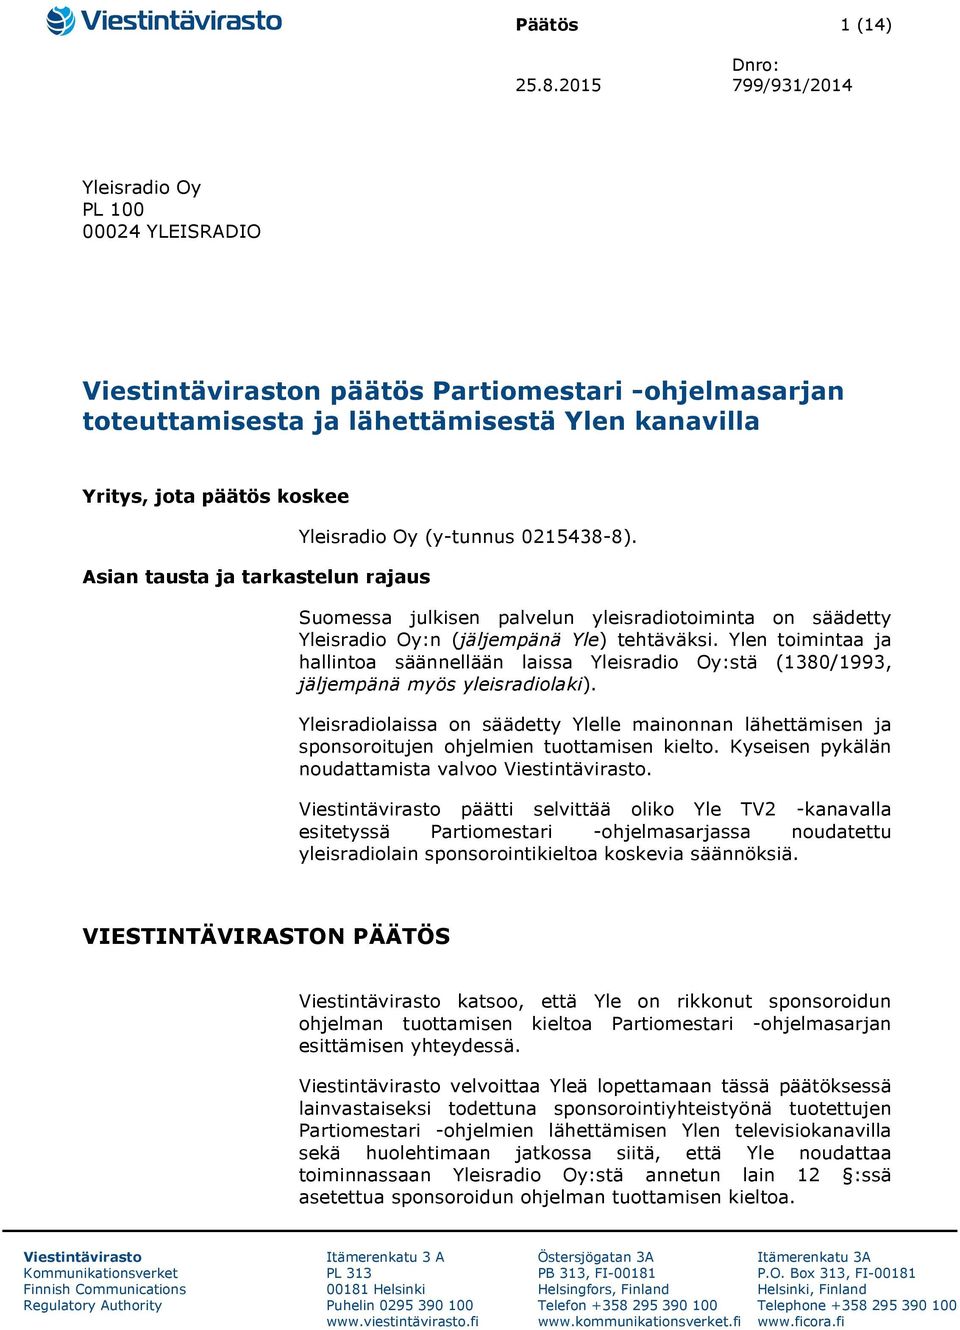 ja tarkastelun rajaus Yleisradio Oy (y-tunnus 0215438-8). Suomessa julkisen palvelun yleisradiotoiminta on säädetty Yleisradio Oy:n (jäljempänä Yle) tehtäväksi.